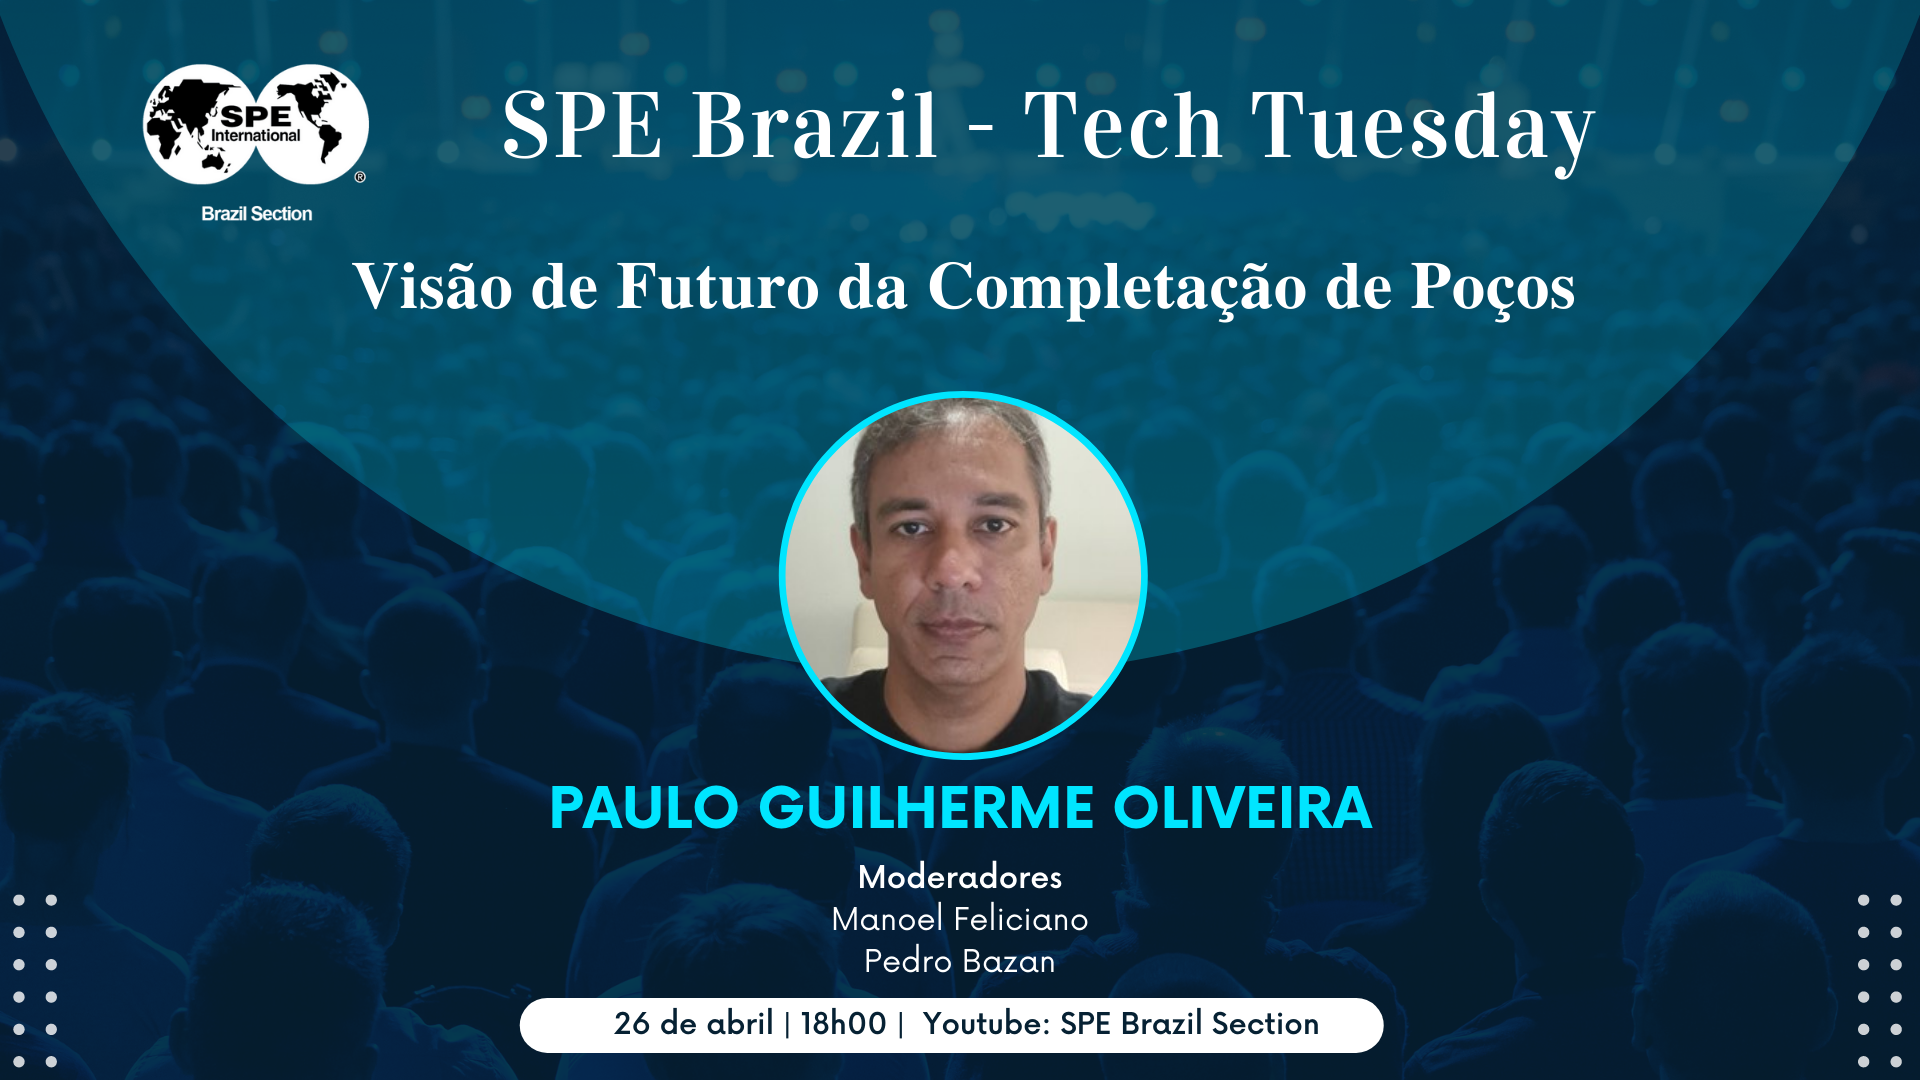 SPE Brazil Tech Tuesday: “Visão de Futuro da Completação de Poços”